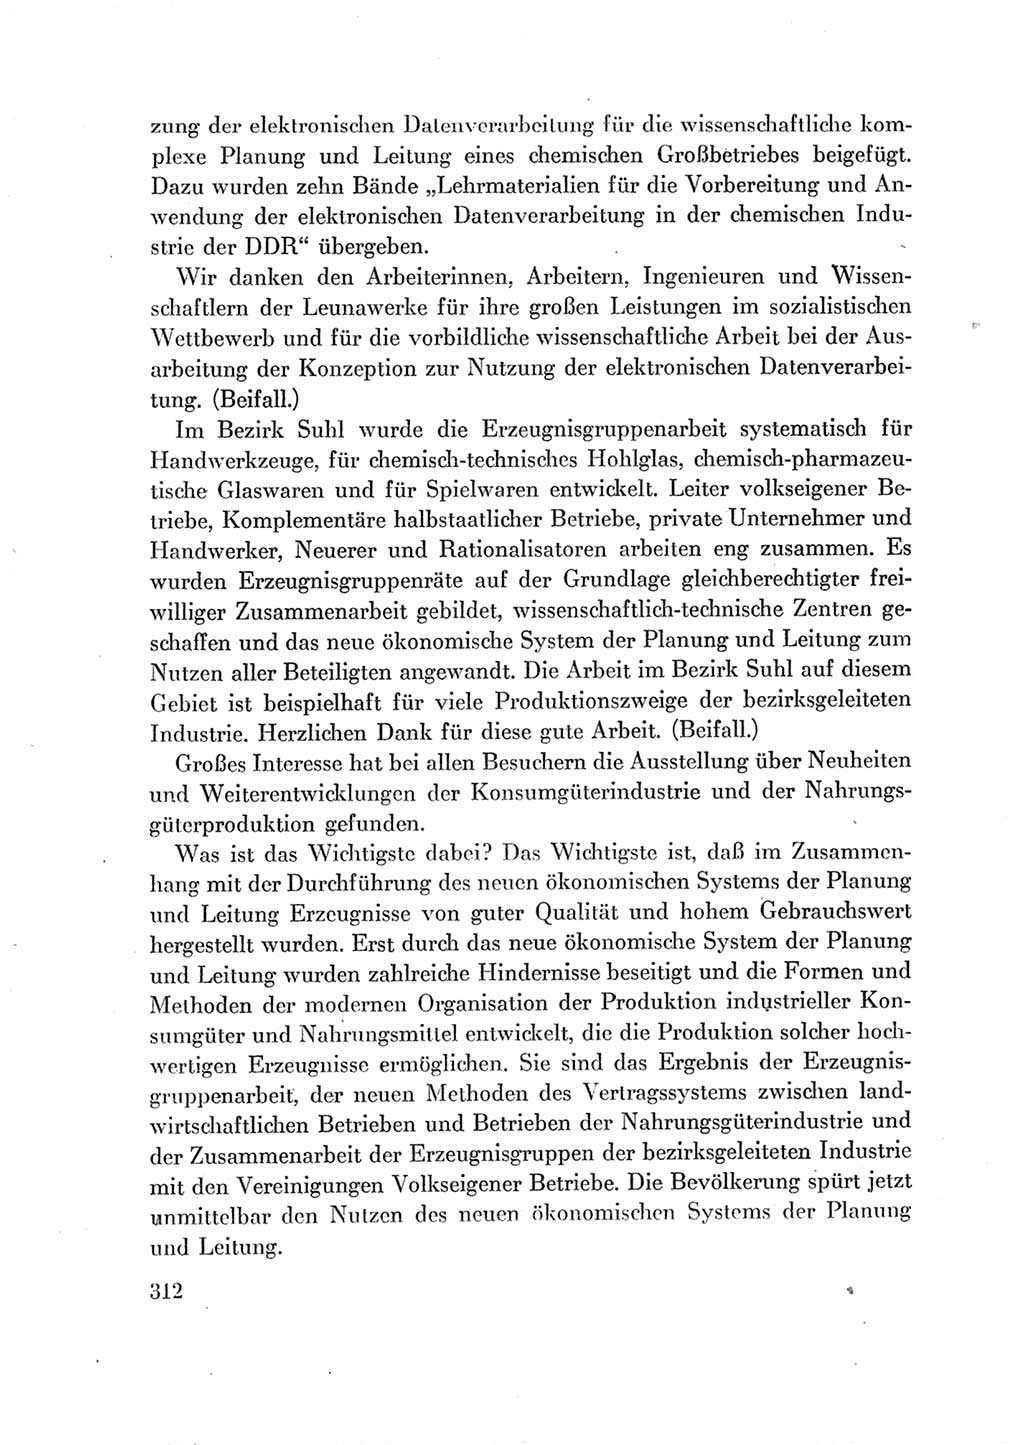 Protokoll der Verhandlungen des Ⅶ. Parteitages der Sozialistischen Einheitspartei Deutschlands (SED) [Deutsche Demokratische Republik (DDR)] 1967, Band Ⅱ, Seite 312 (Prot. Verh. Ⅶ. PT SED DDR 1967, Bd. Ⅱ, S. 312)